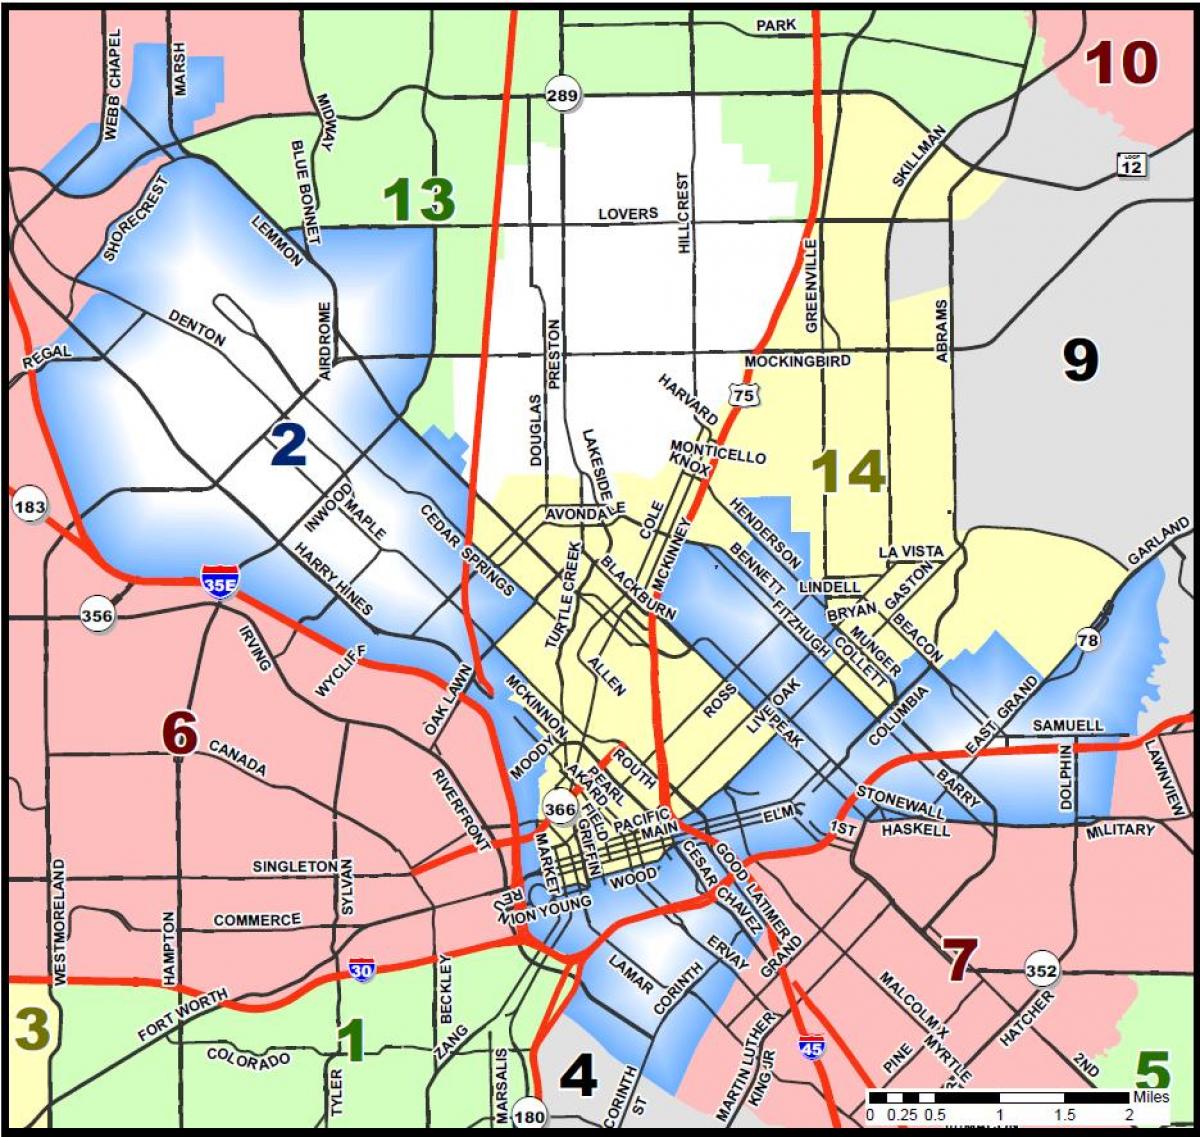 La ciudad de Dallas consejo mapa del distrito de